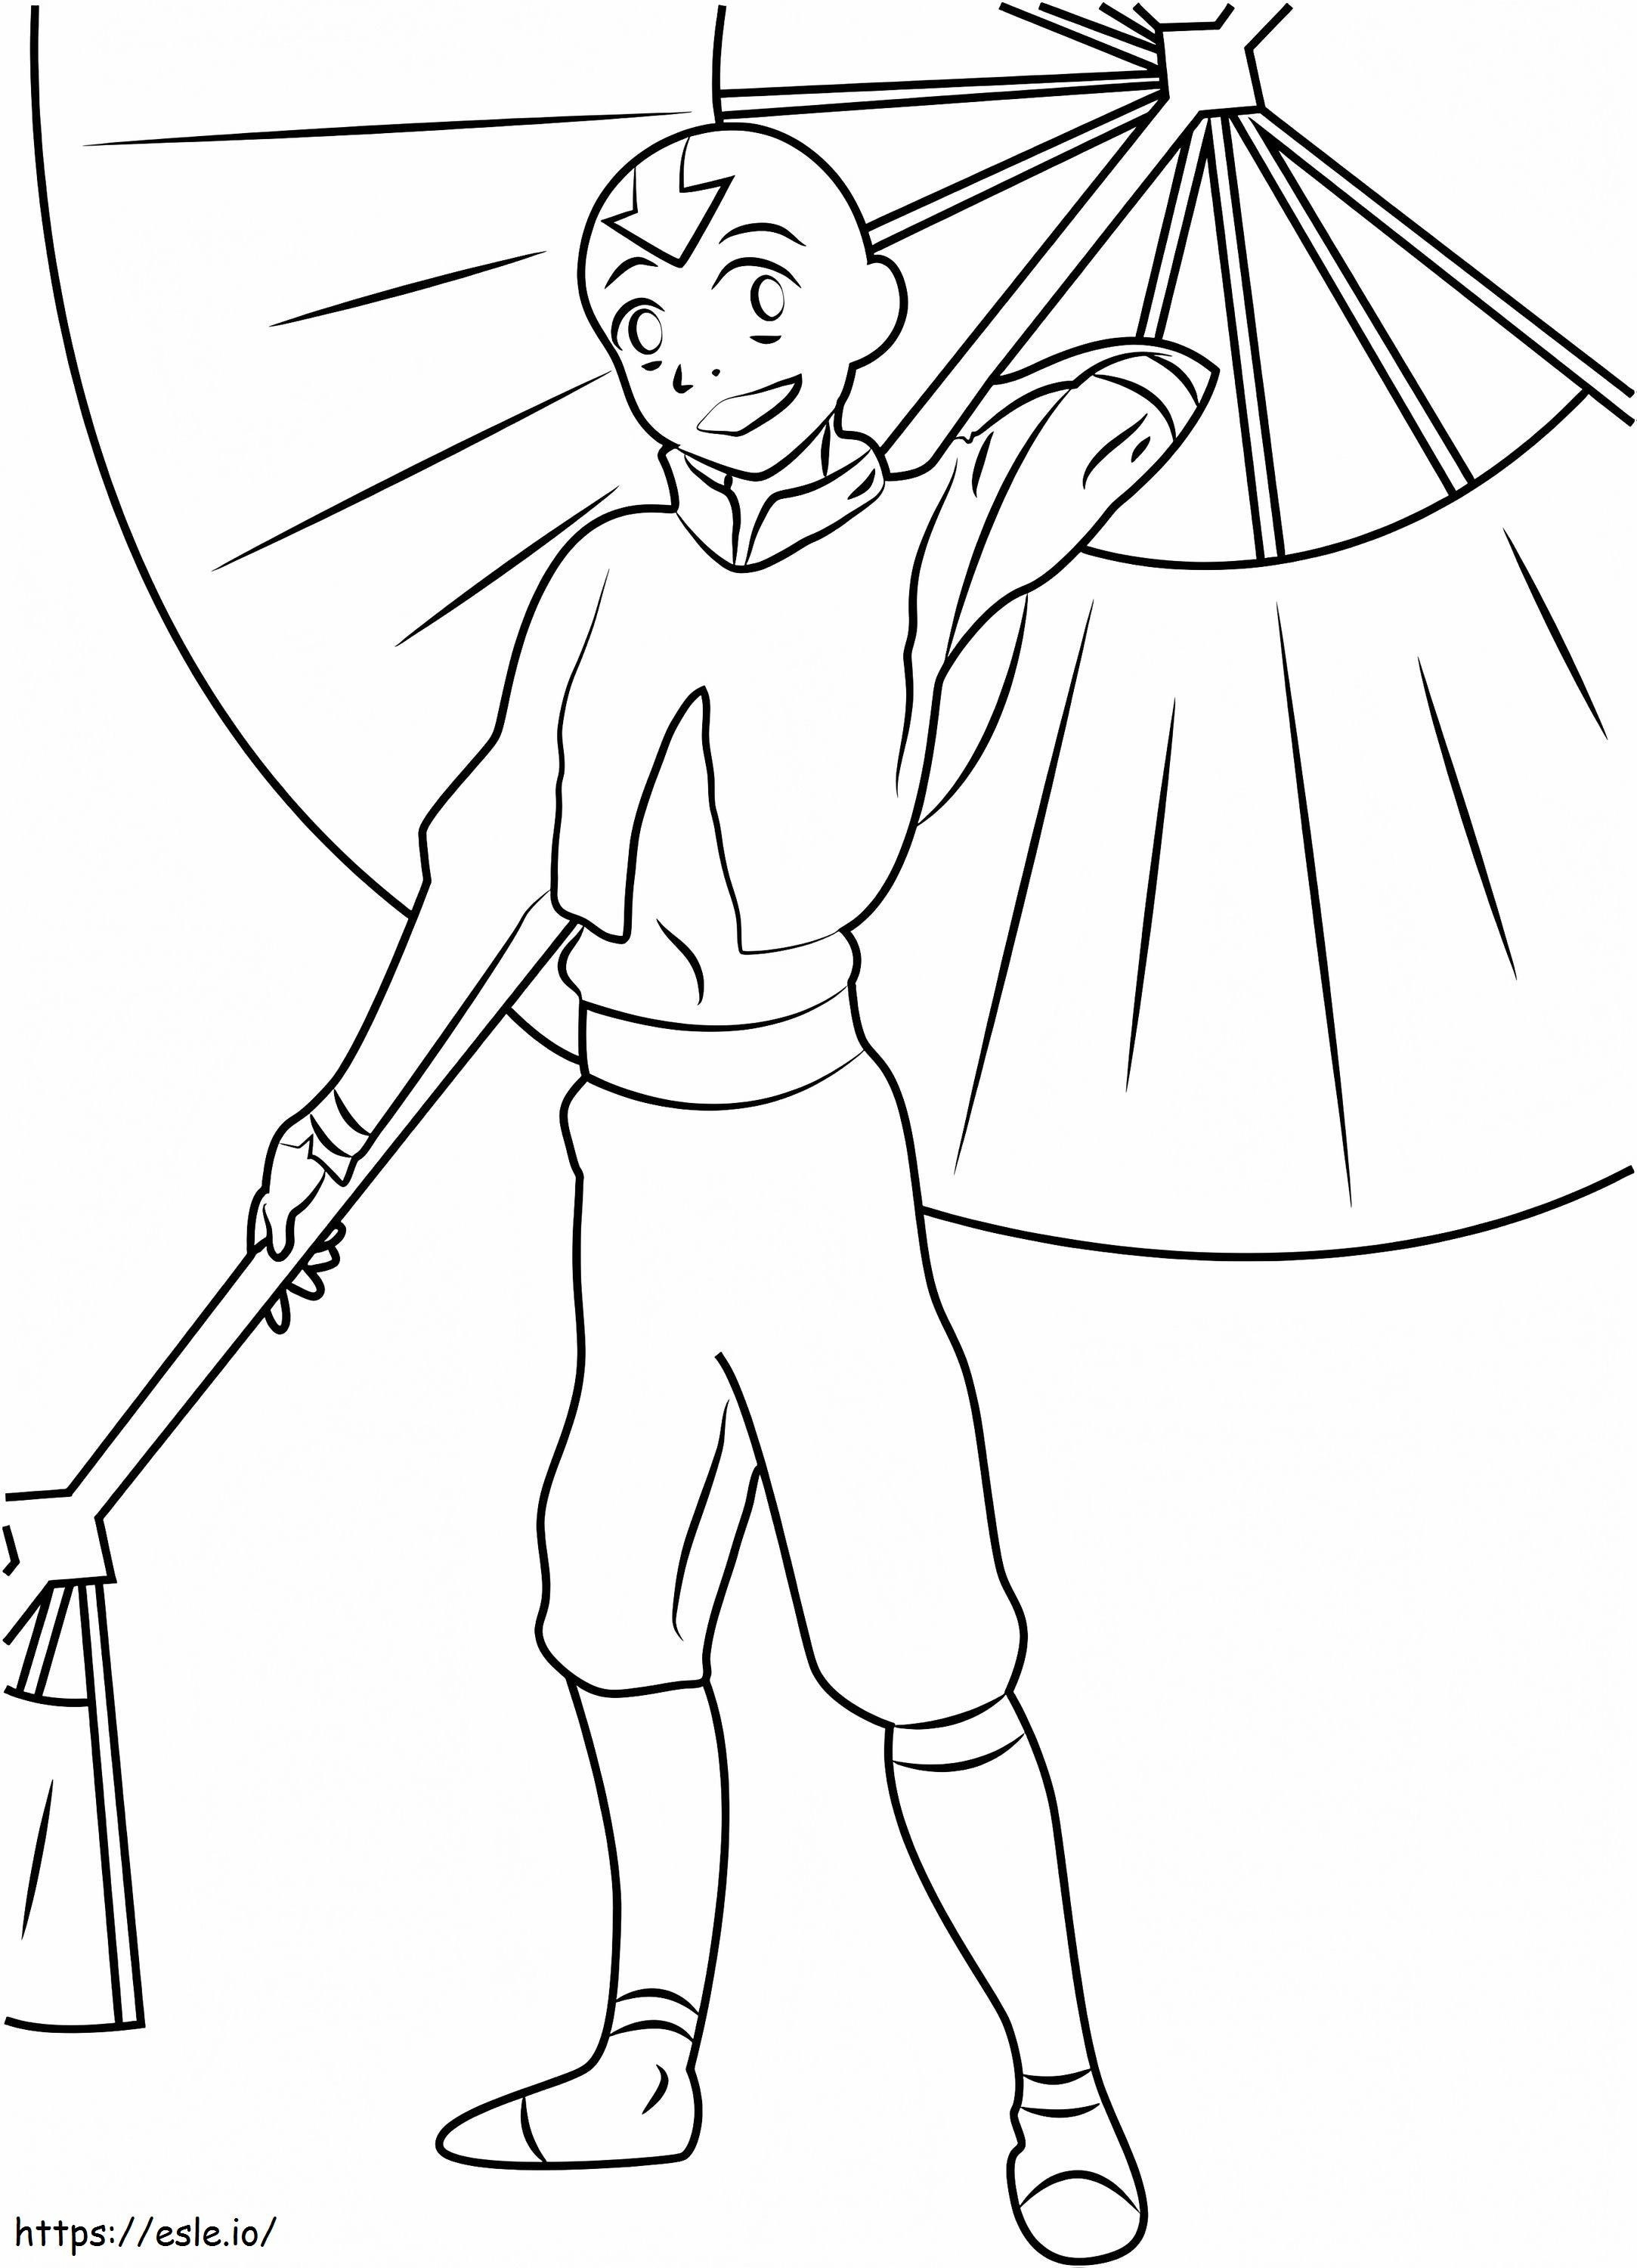 1532491257 Szczęśliwy Aang z parasolem A4 kolorowanka